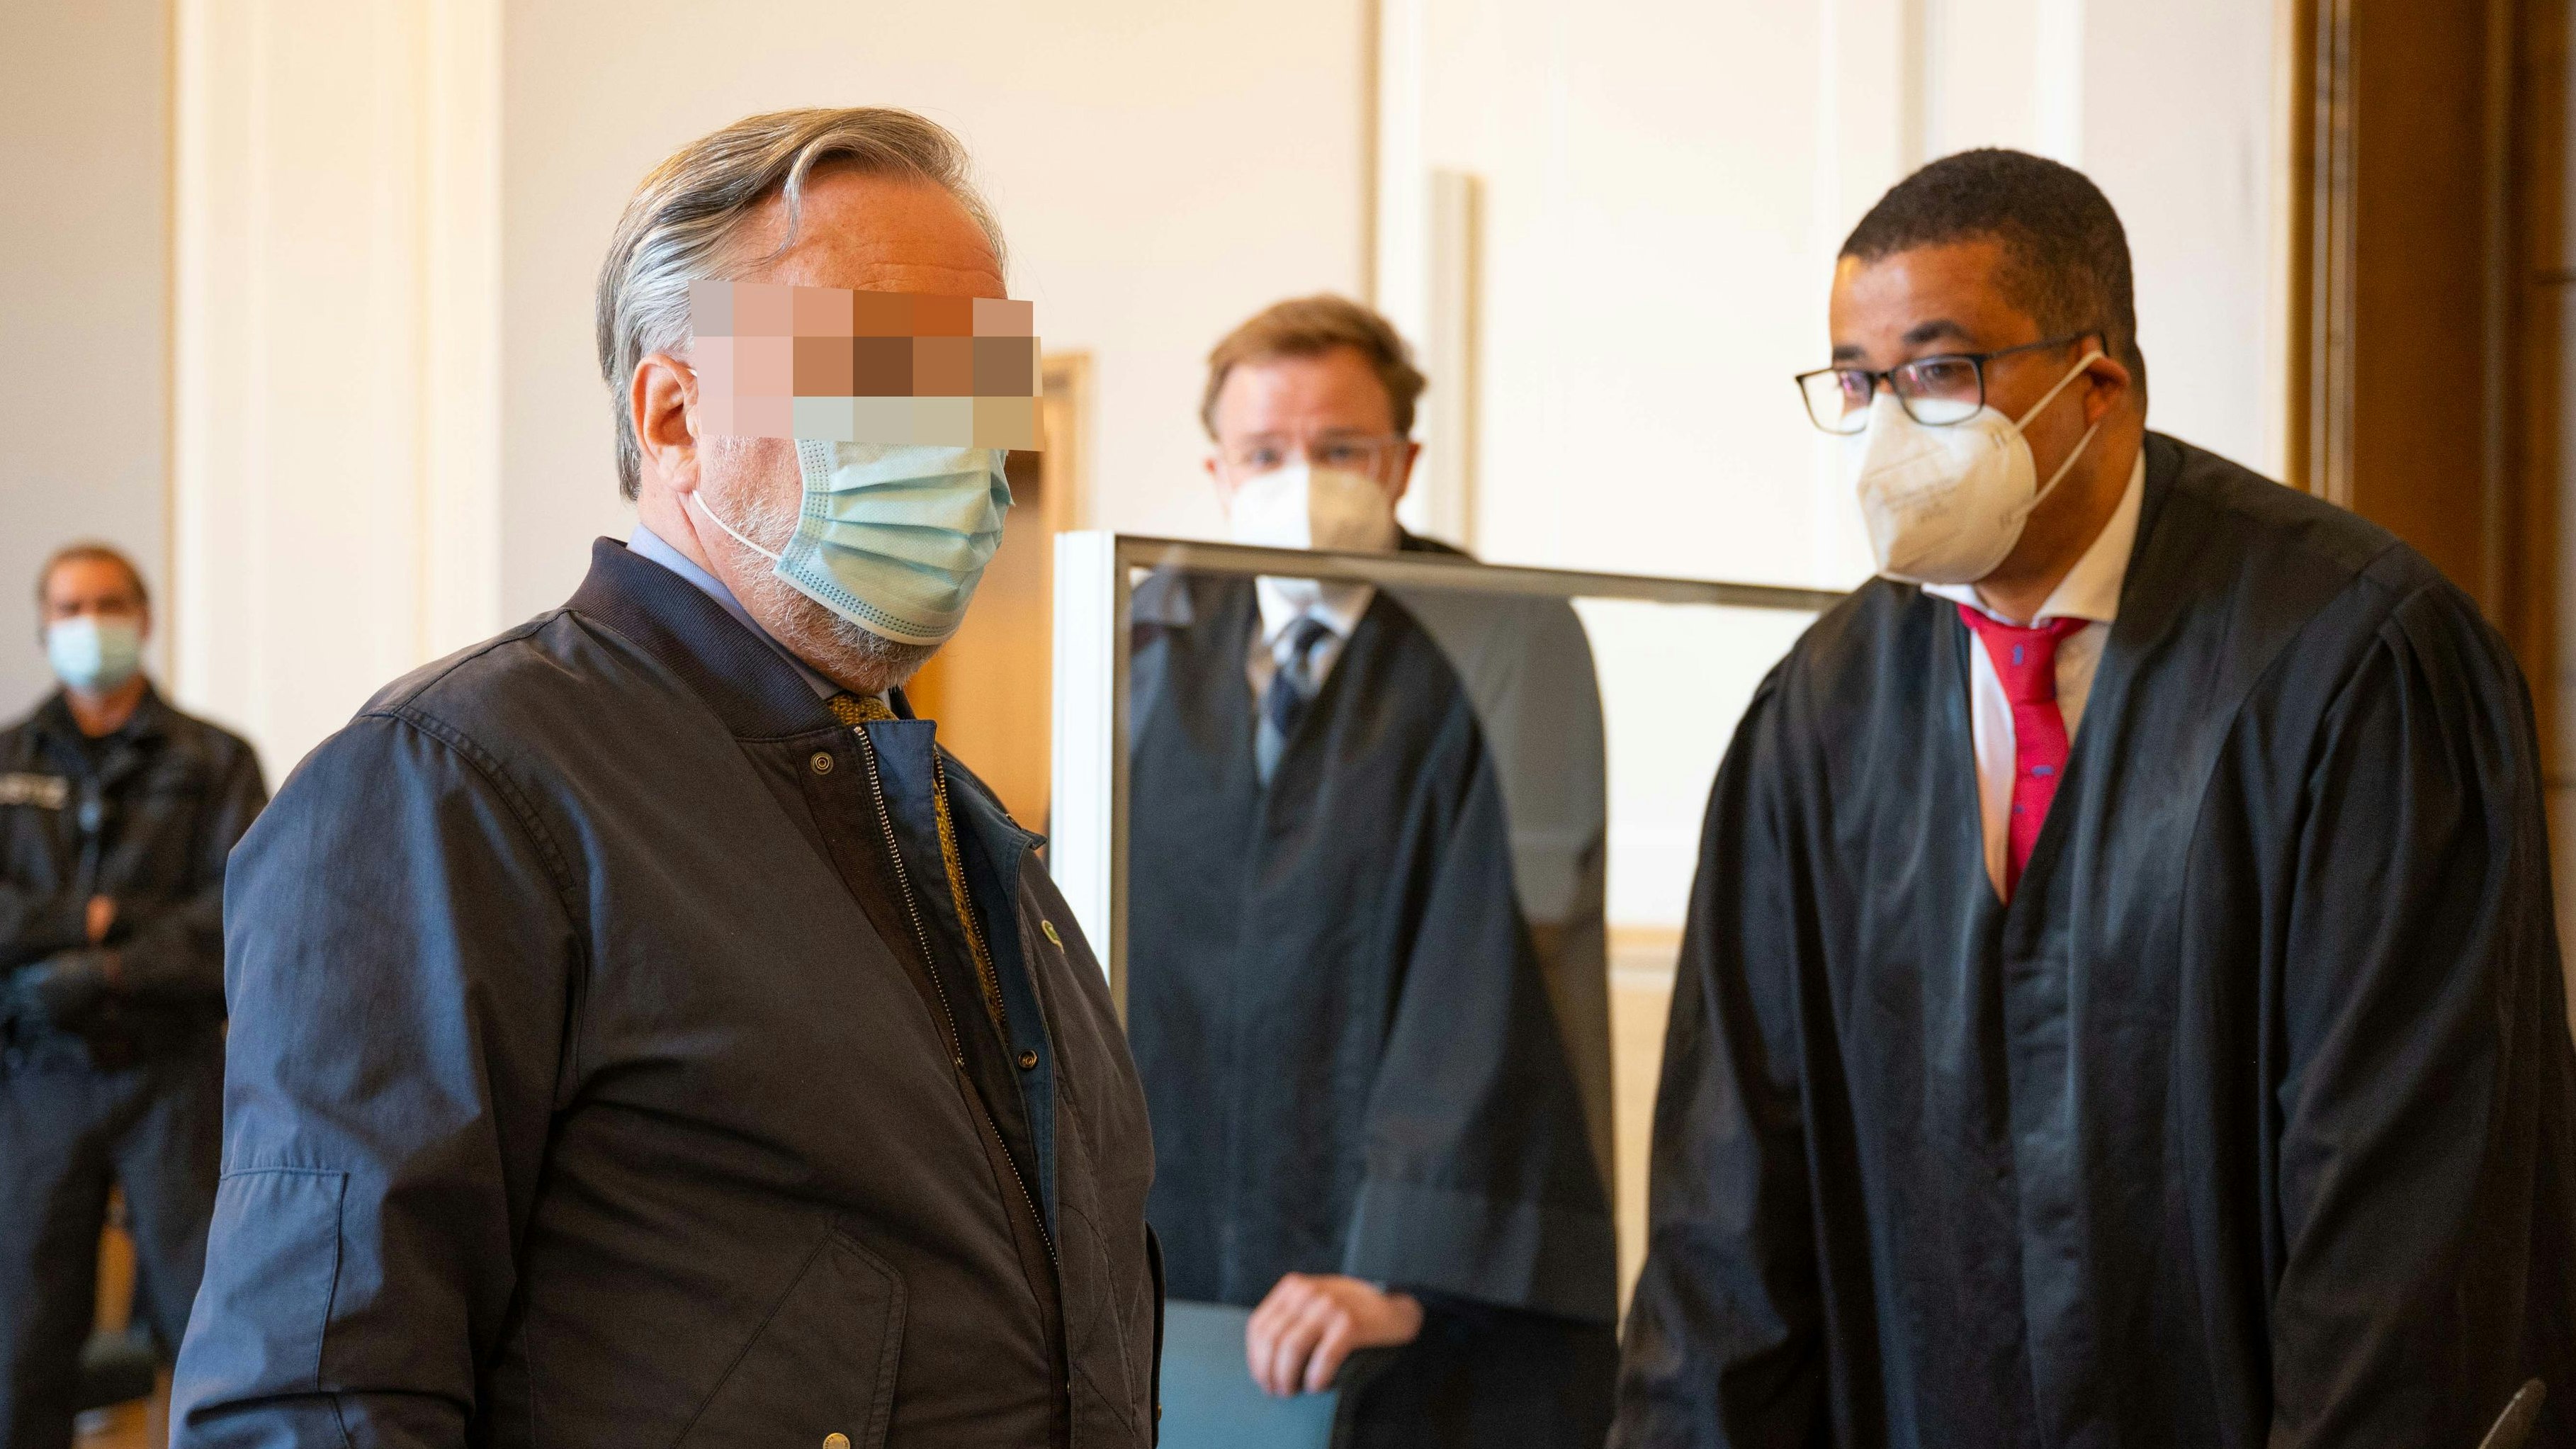 Ratlos wirkende Gesichter: Den Prozesstag hatten sich der einstige Holt-Finanzdirektor Heinz L. und seine Verteidiger sicher anders vorgestellt. Foto: M. Niehues